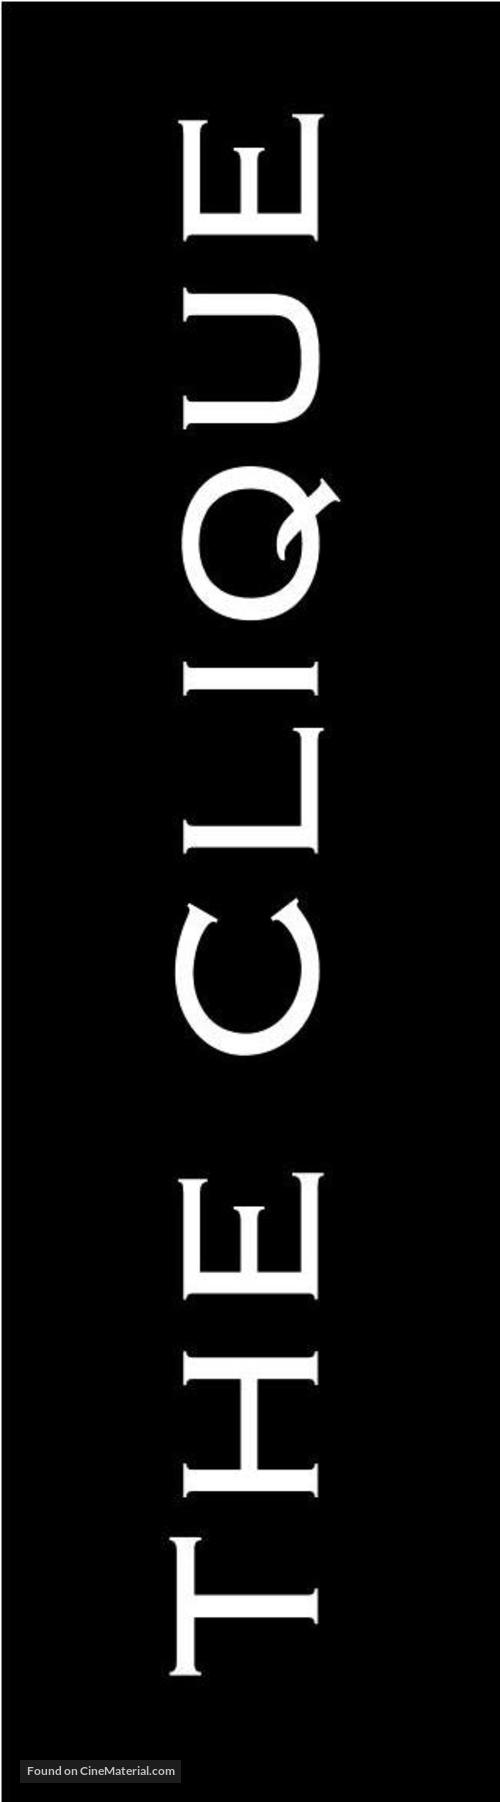 The Clique - Logo